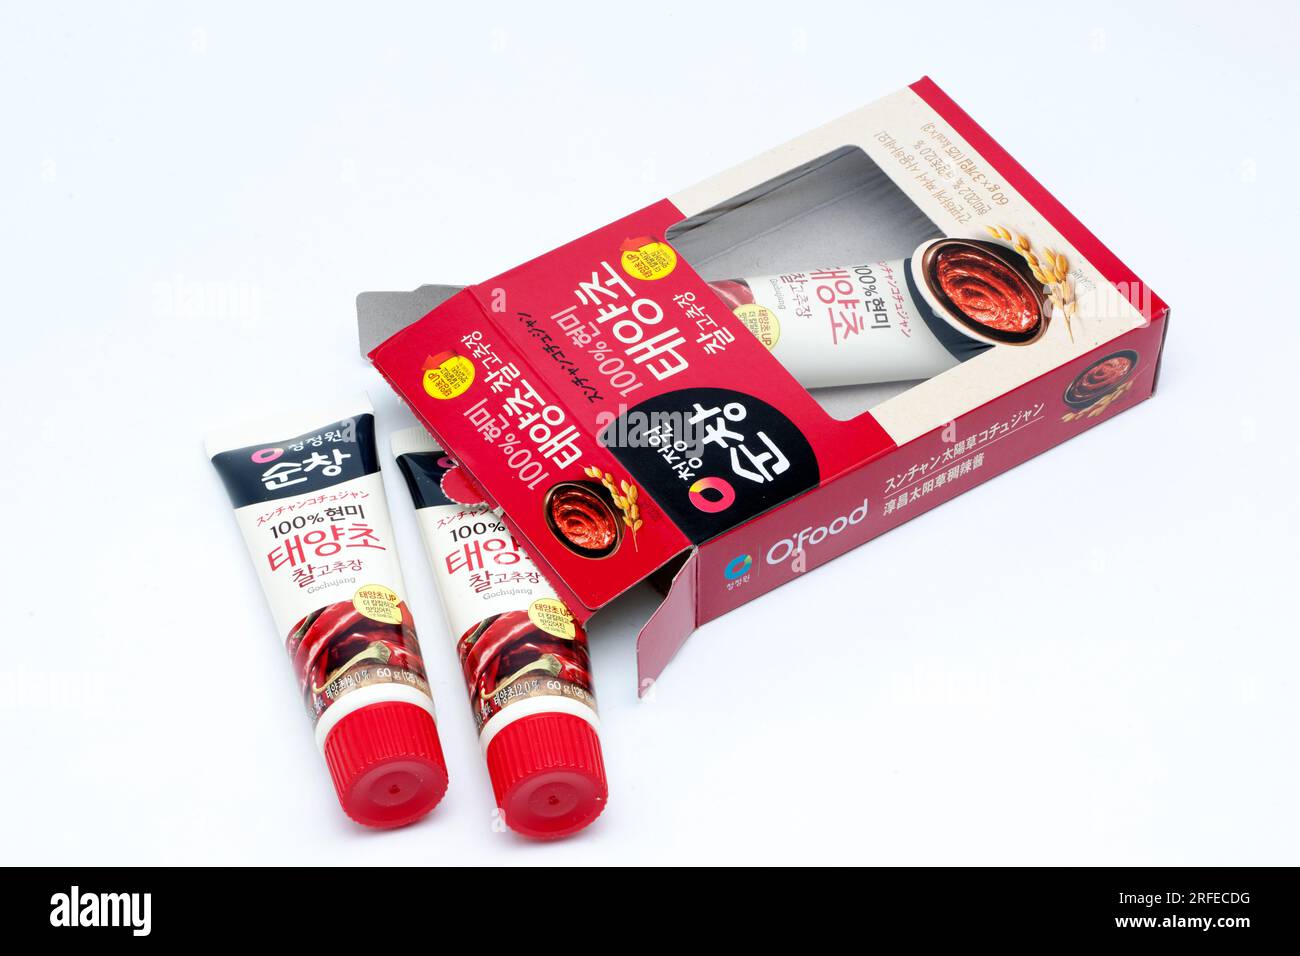 Tre provette da 60 g e una scatola di pasta Ofood Gochujang Red Pepper Paste dalla Corea Foto Stock